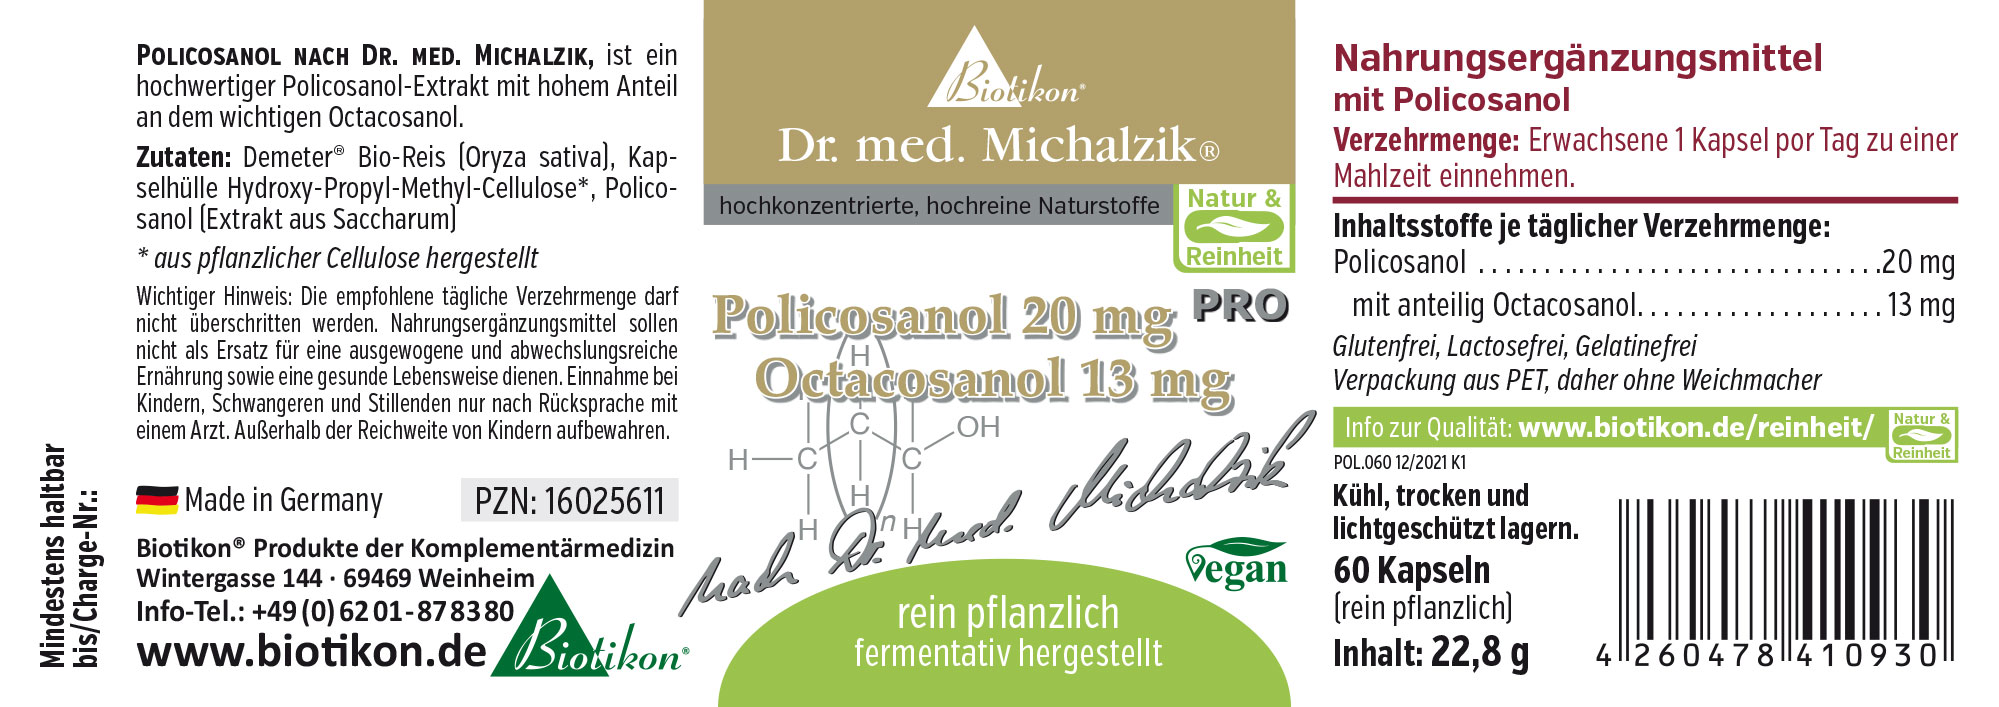 Policosanolo 20 mg PRO Octacosanolo 13 mg